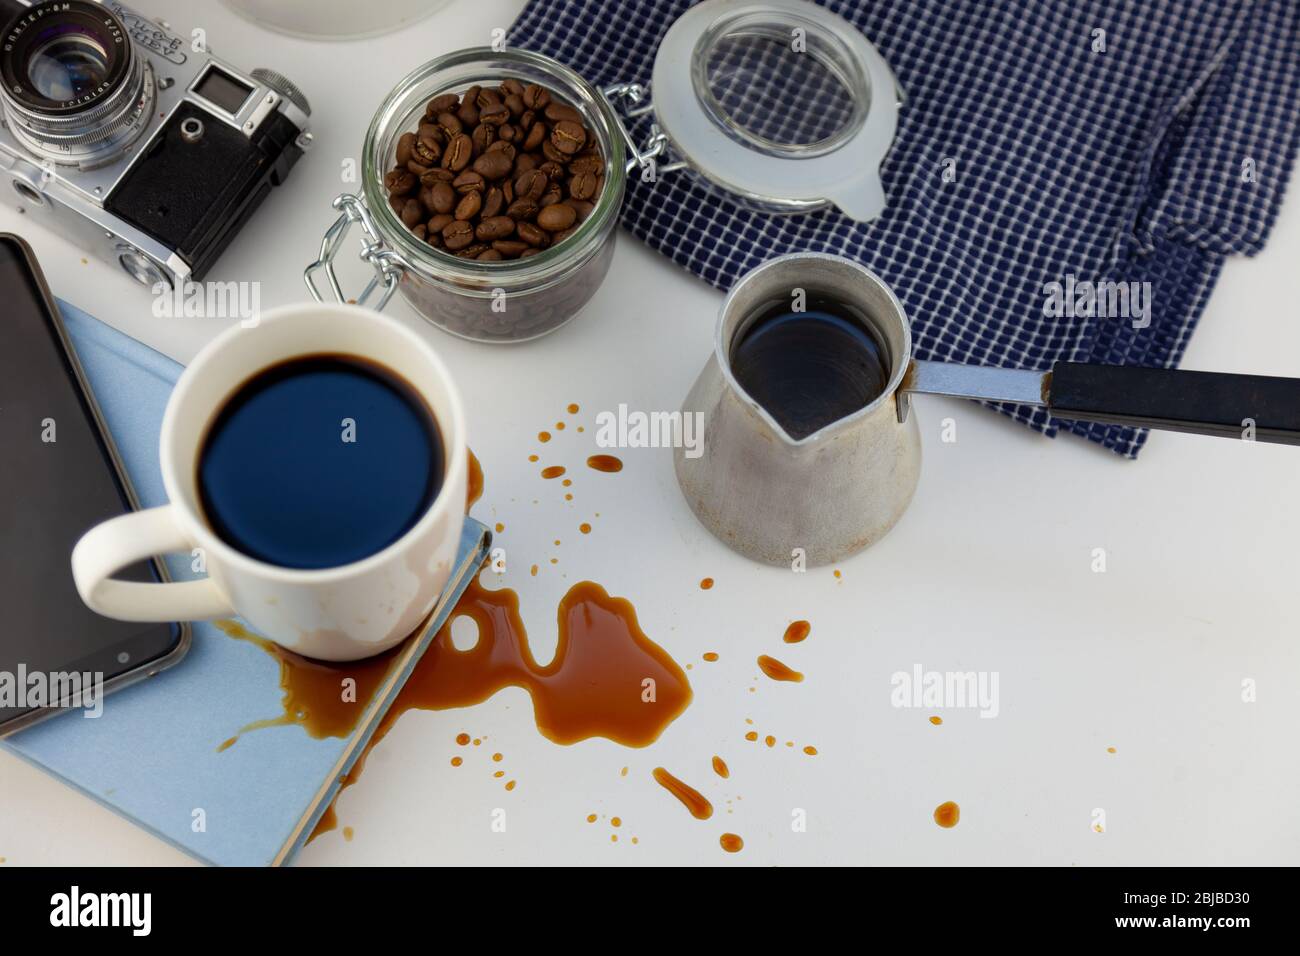 Kaffee verschüttet auf einem Buch auf dem Desktop. Ein cezve für Kaffee,  Kaffeebohnen, eine weiße Tasse Kaffee, verschütten ein Getränk auf den  Tisch, eine Pfütze und Stockfotografie - Alamy